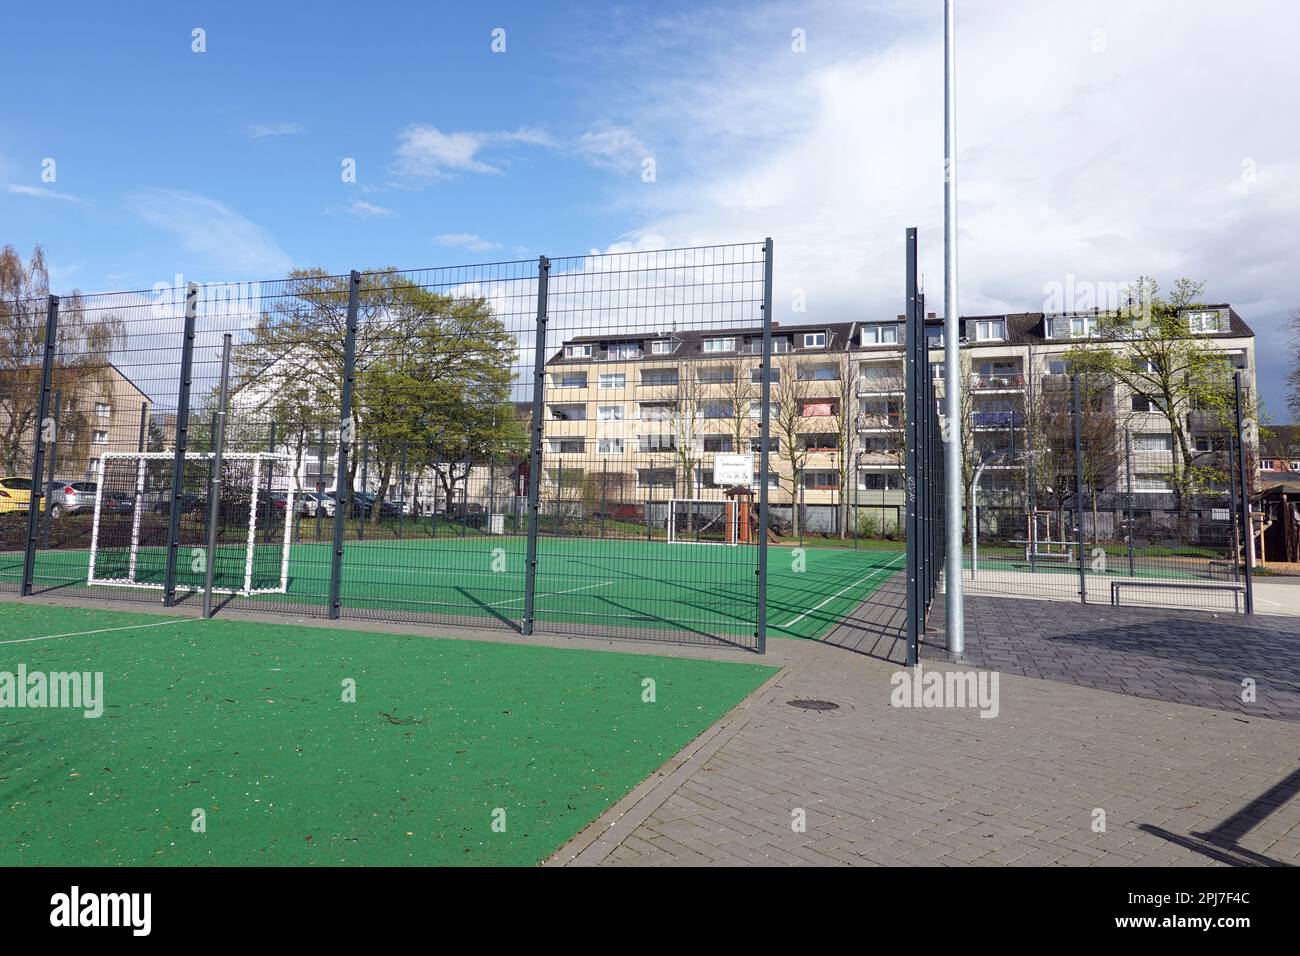 Schweiz- und Sportplatz in einem Wohnviertel von Buchheim, Nordrhein-Westfalen, Deutschland, Köln Foto Stock